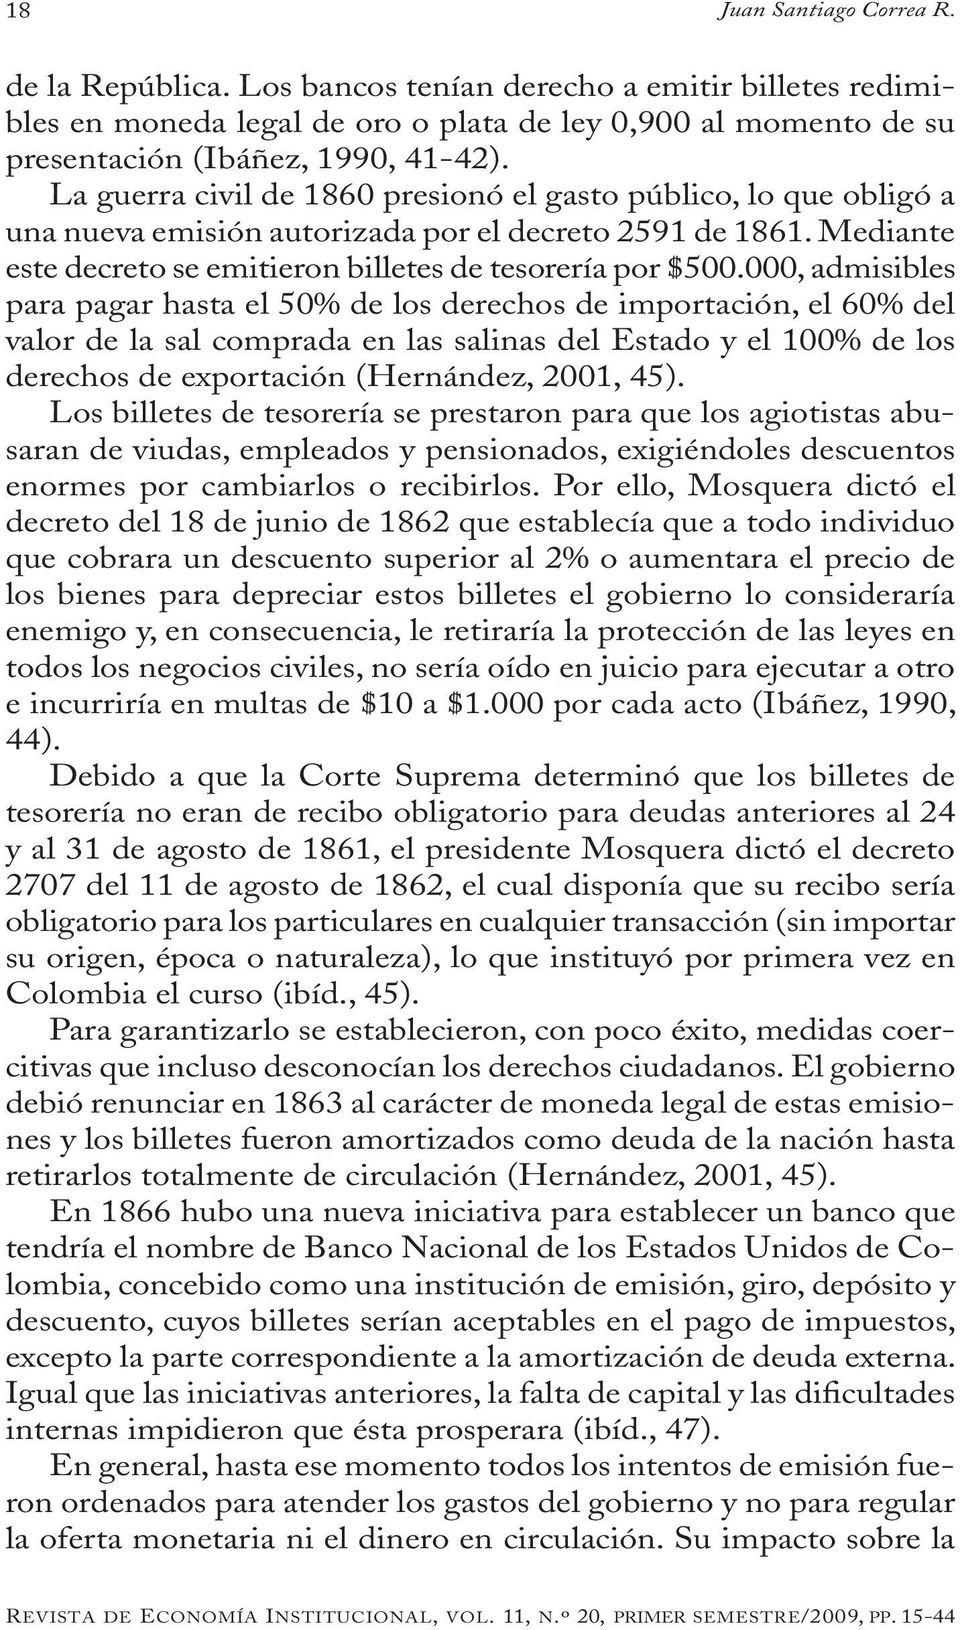 000, admisibles para pagar hasta el 50% de los derechos de importación, el 60% del valor de la sal comprada en las salinas del Estado y el 100% de los derechos de exportación (Hernández, 2001, 45).